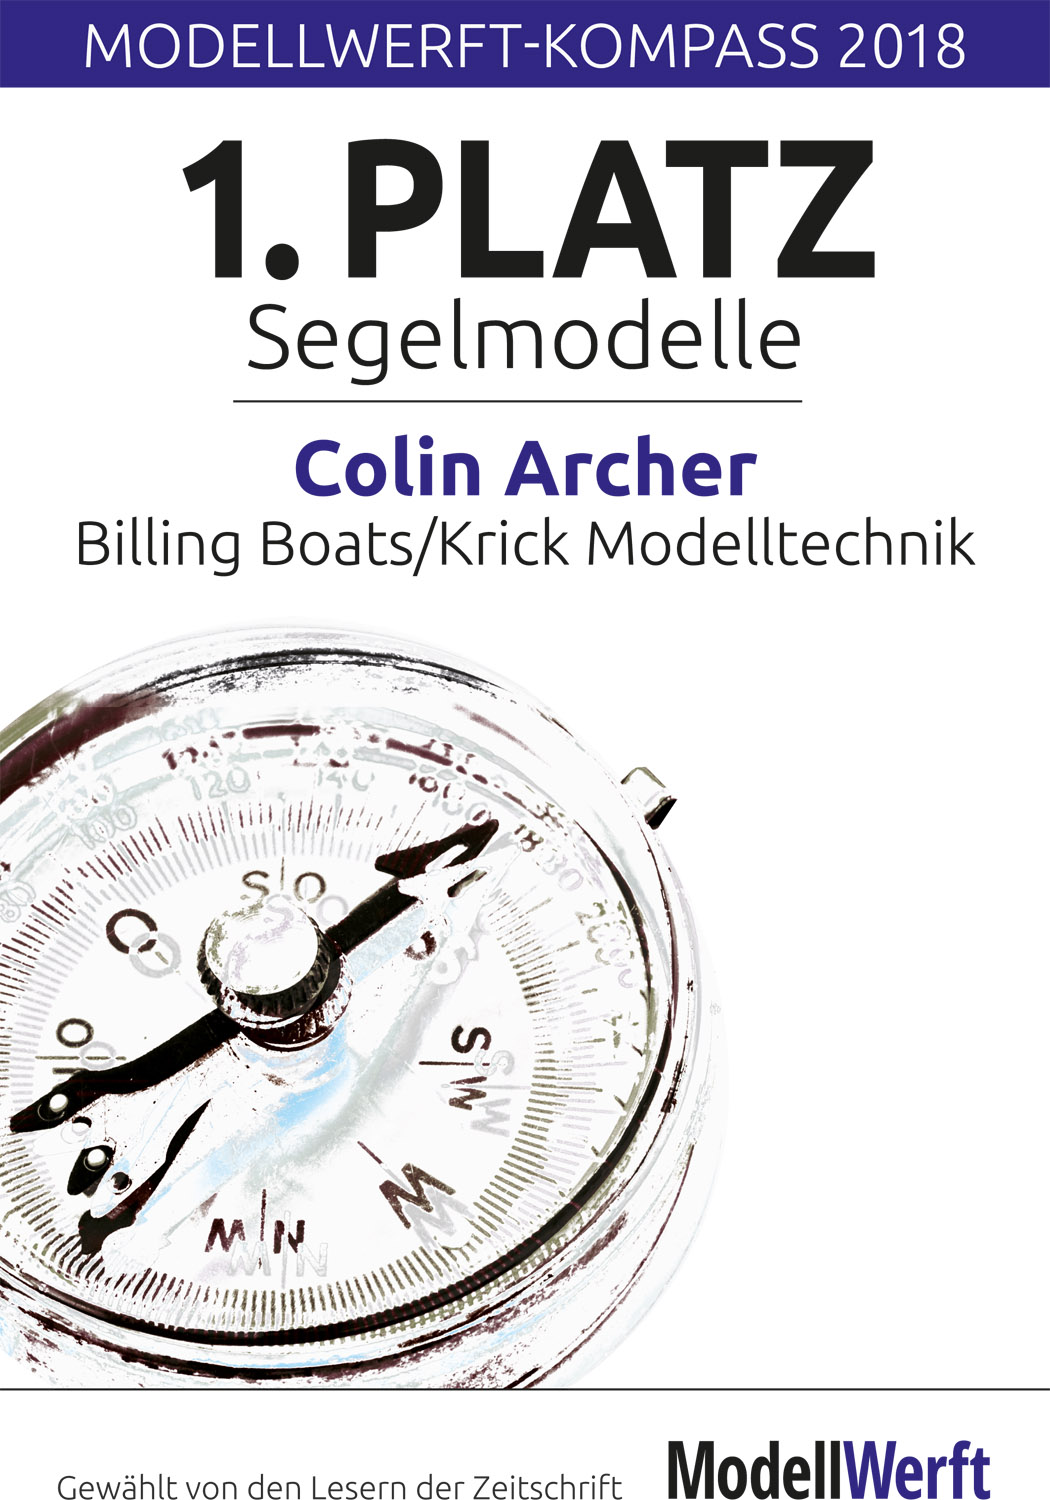 Krick Modelltechnik: Krick Modelltechnik - Modellbau vom Besten seit 1953